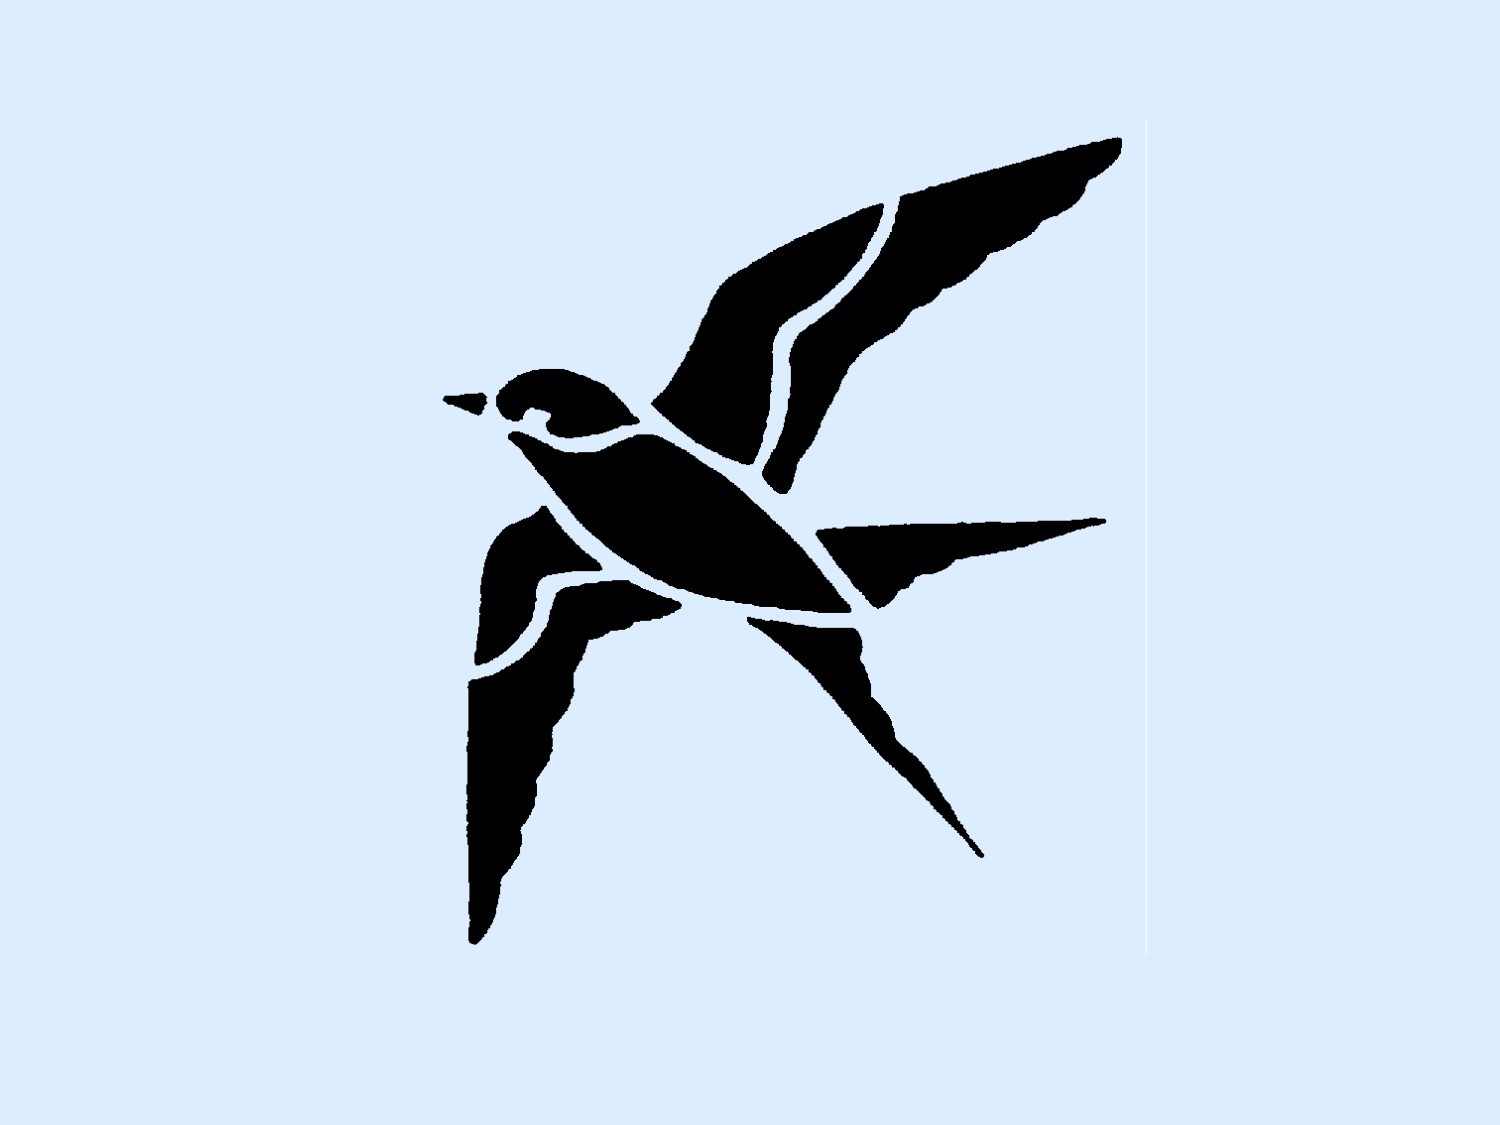 Bird in Flight Stencil 4x4.7 by ArtisticStencils on Etsy